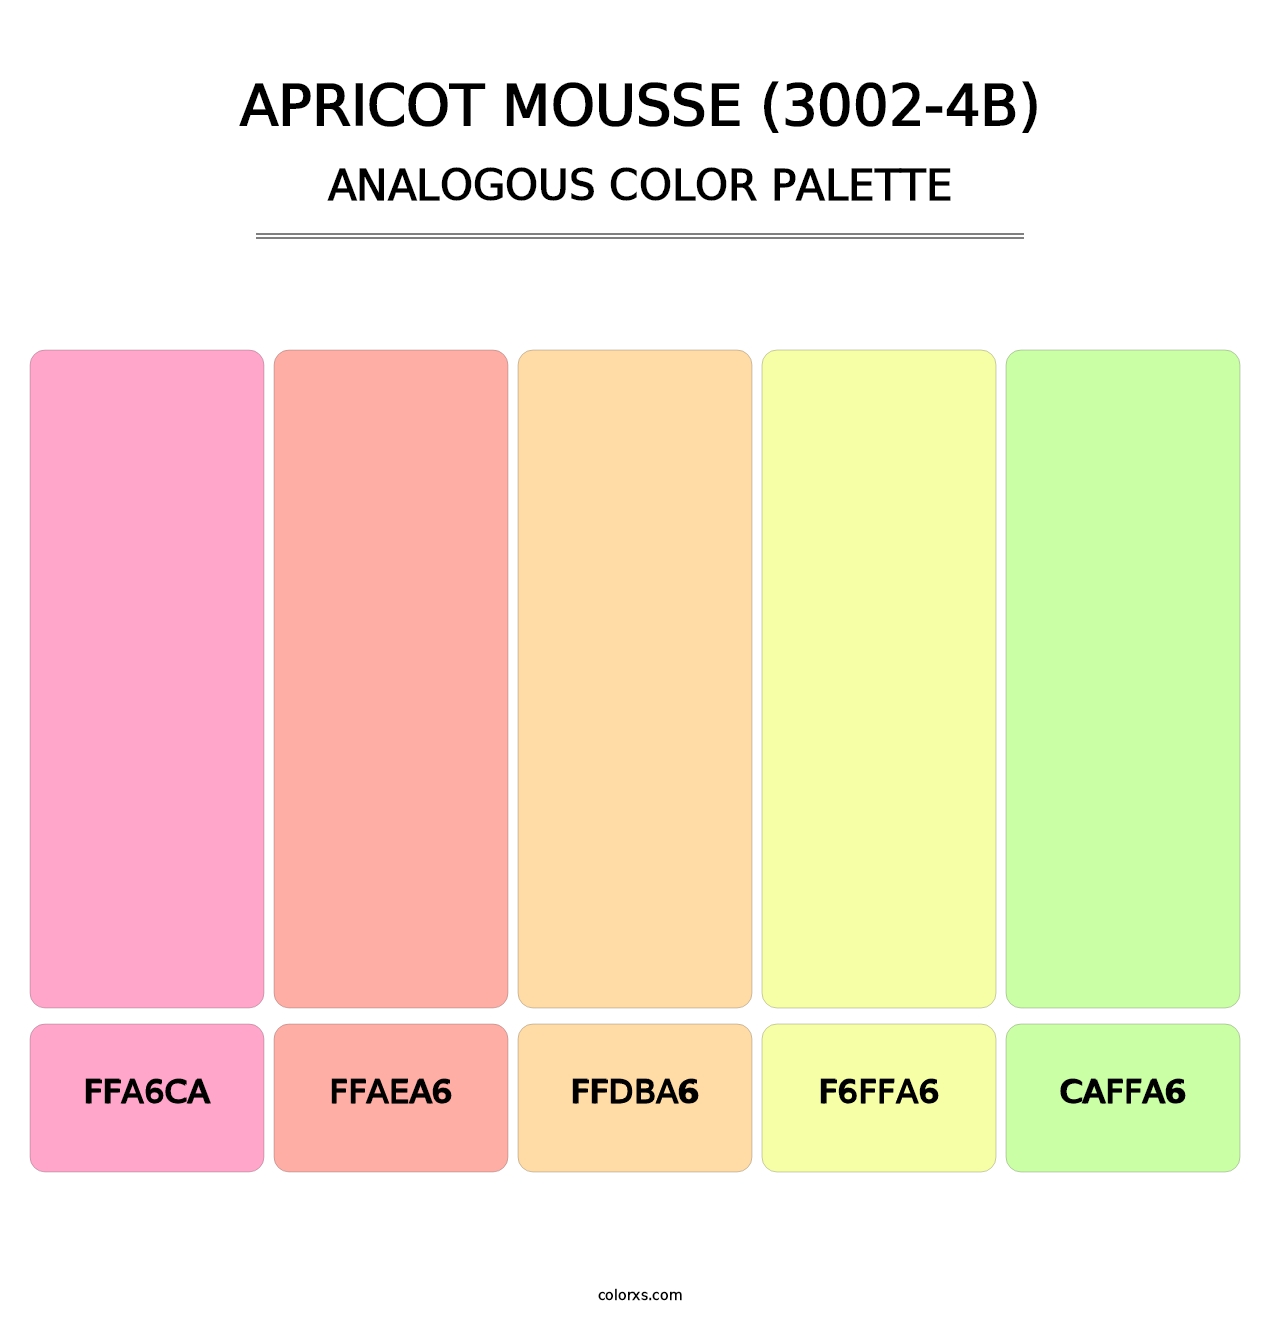 Apricot Mousse (3002-4B) - Analogous Color Palette